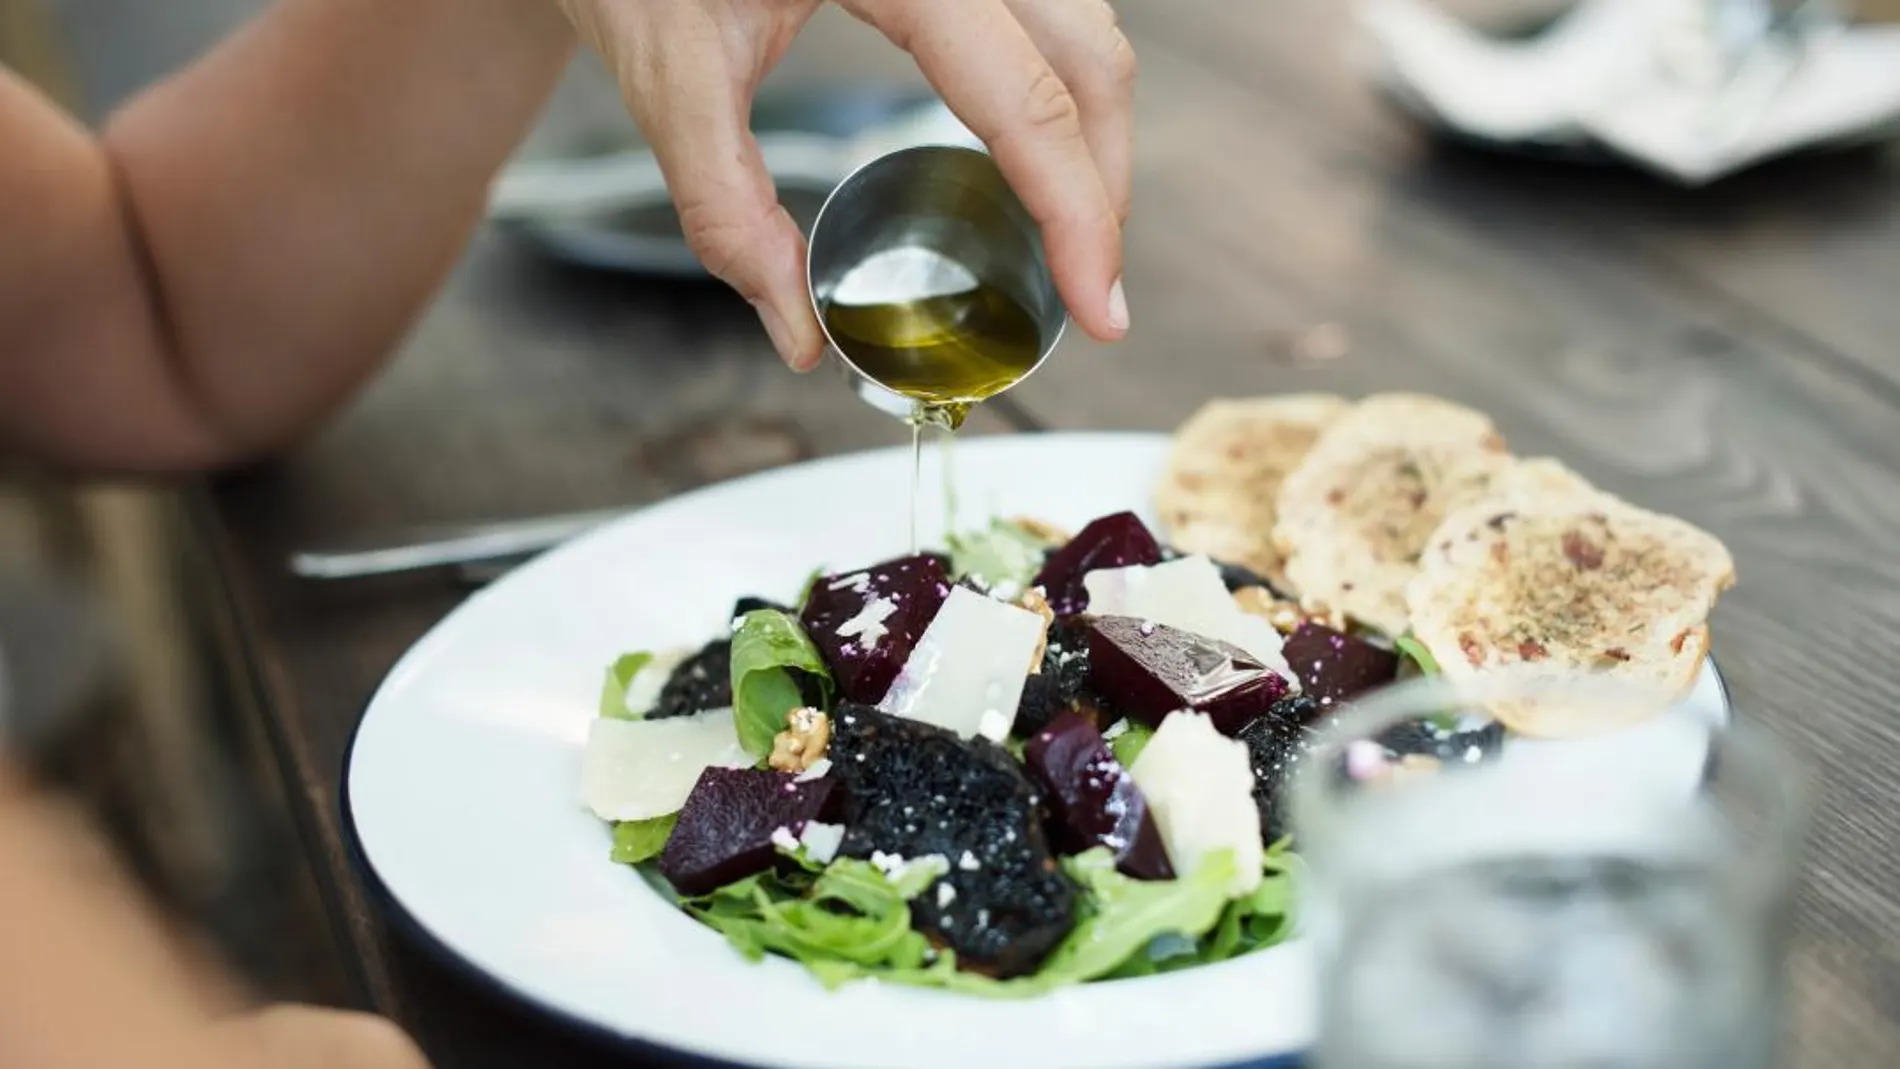 Tomar aceite de oliva en pequeñas dosis es muy bueno para la salud